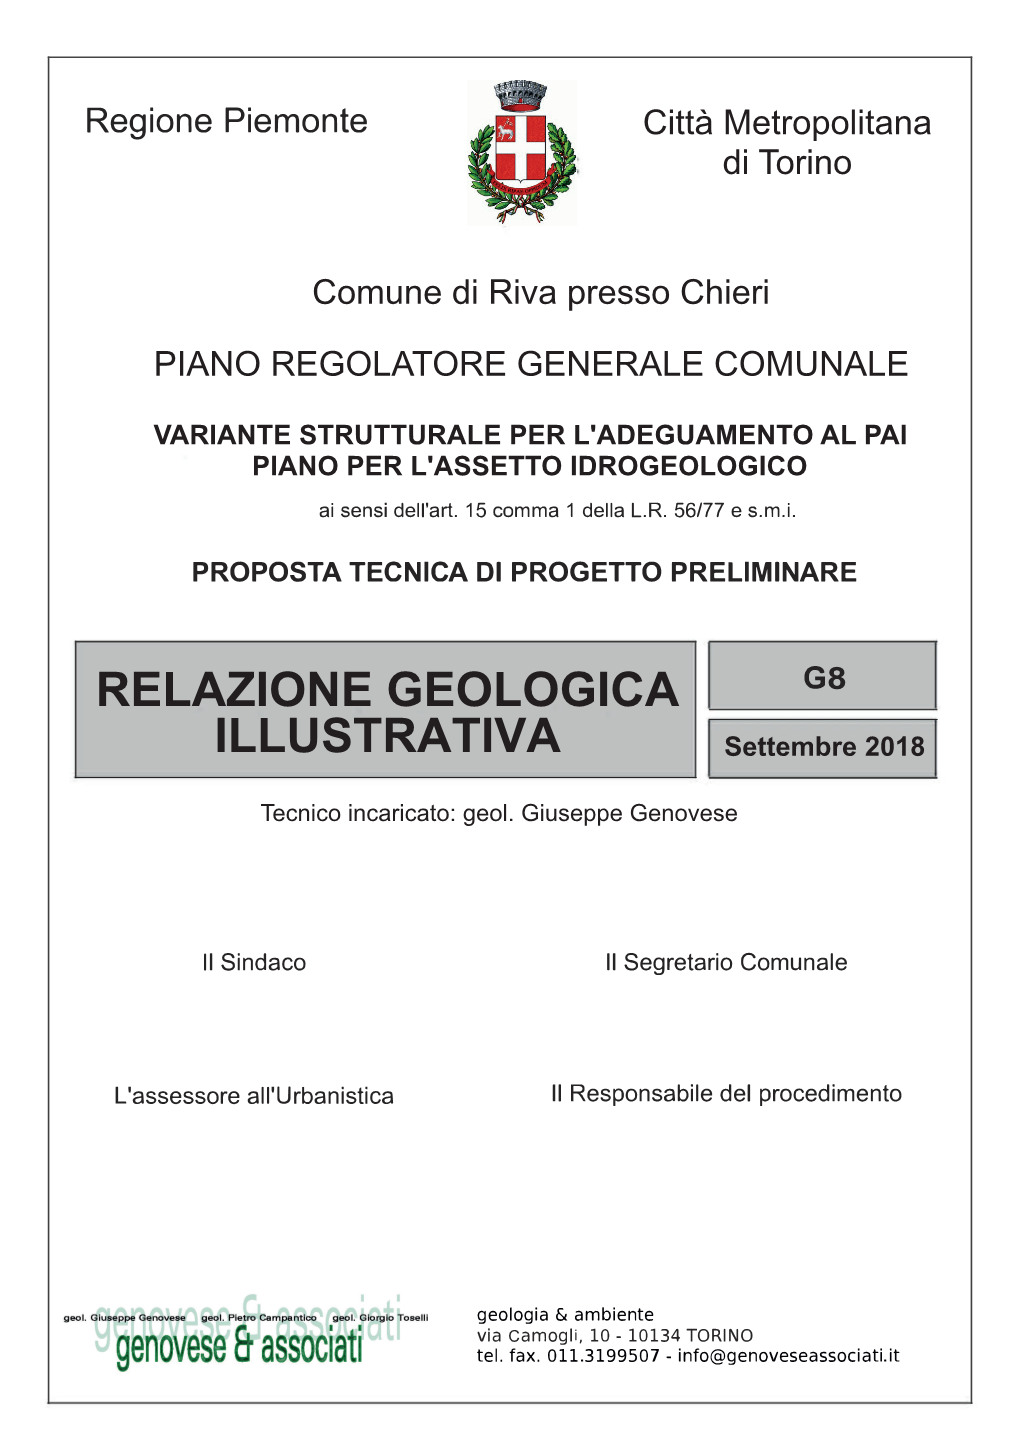 Relazione Geologica Illustrativa (Elaborato G8)